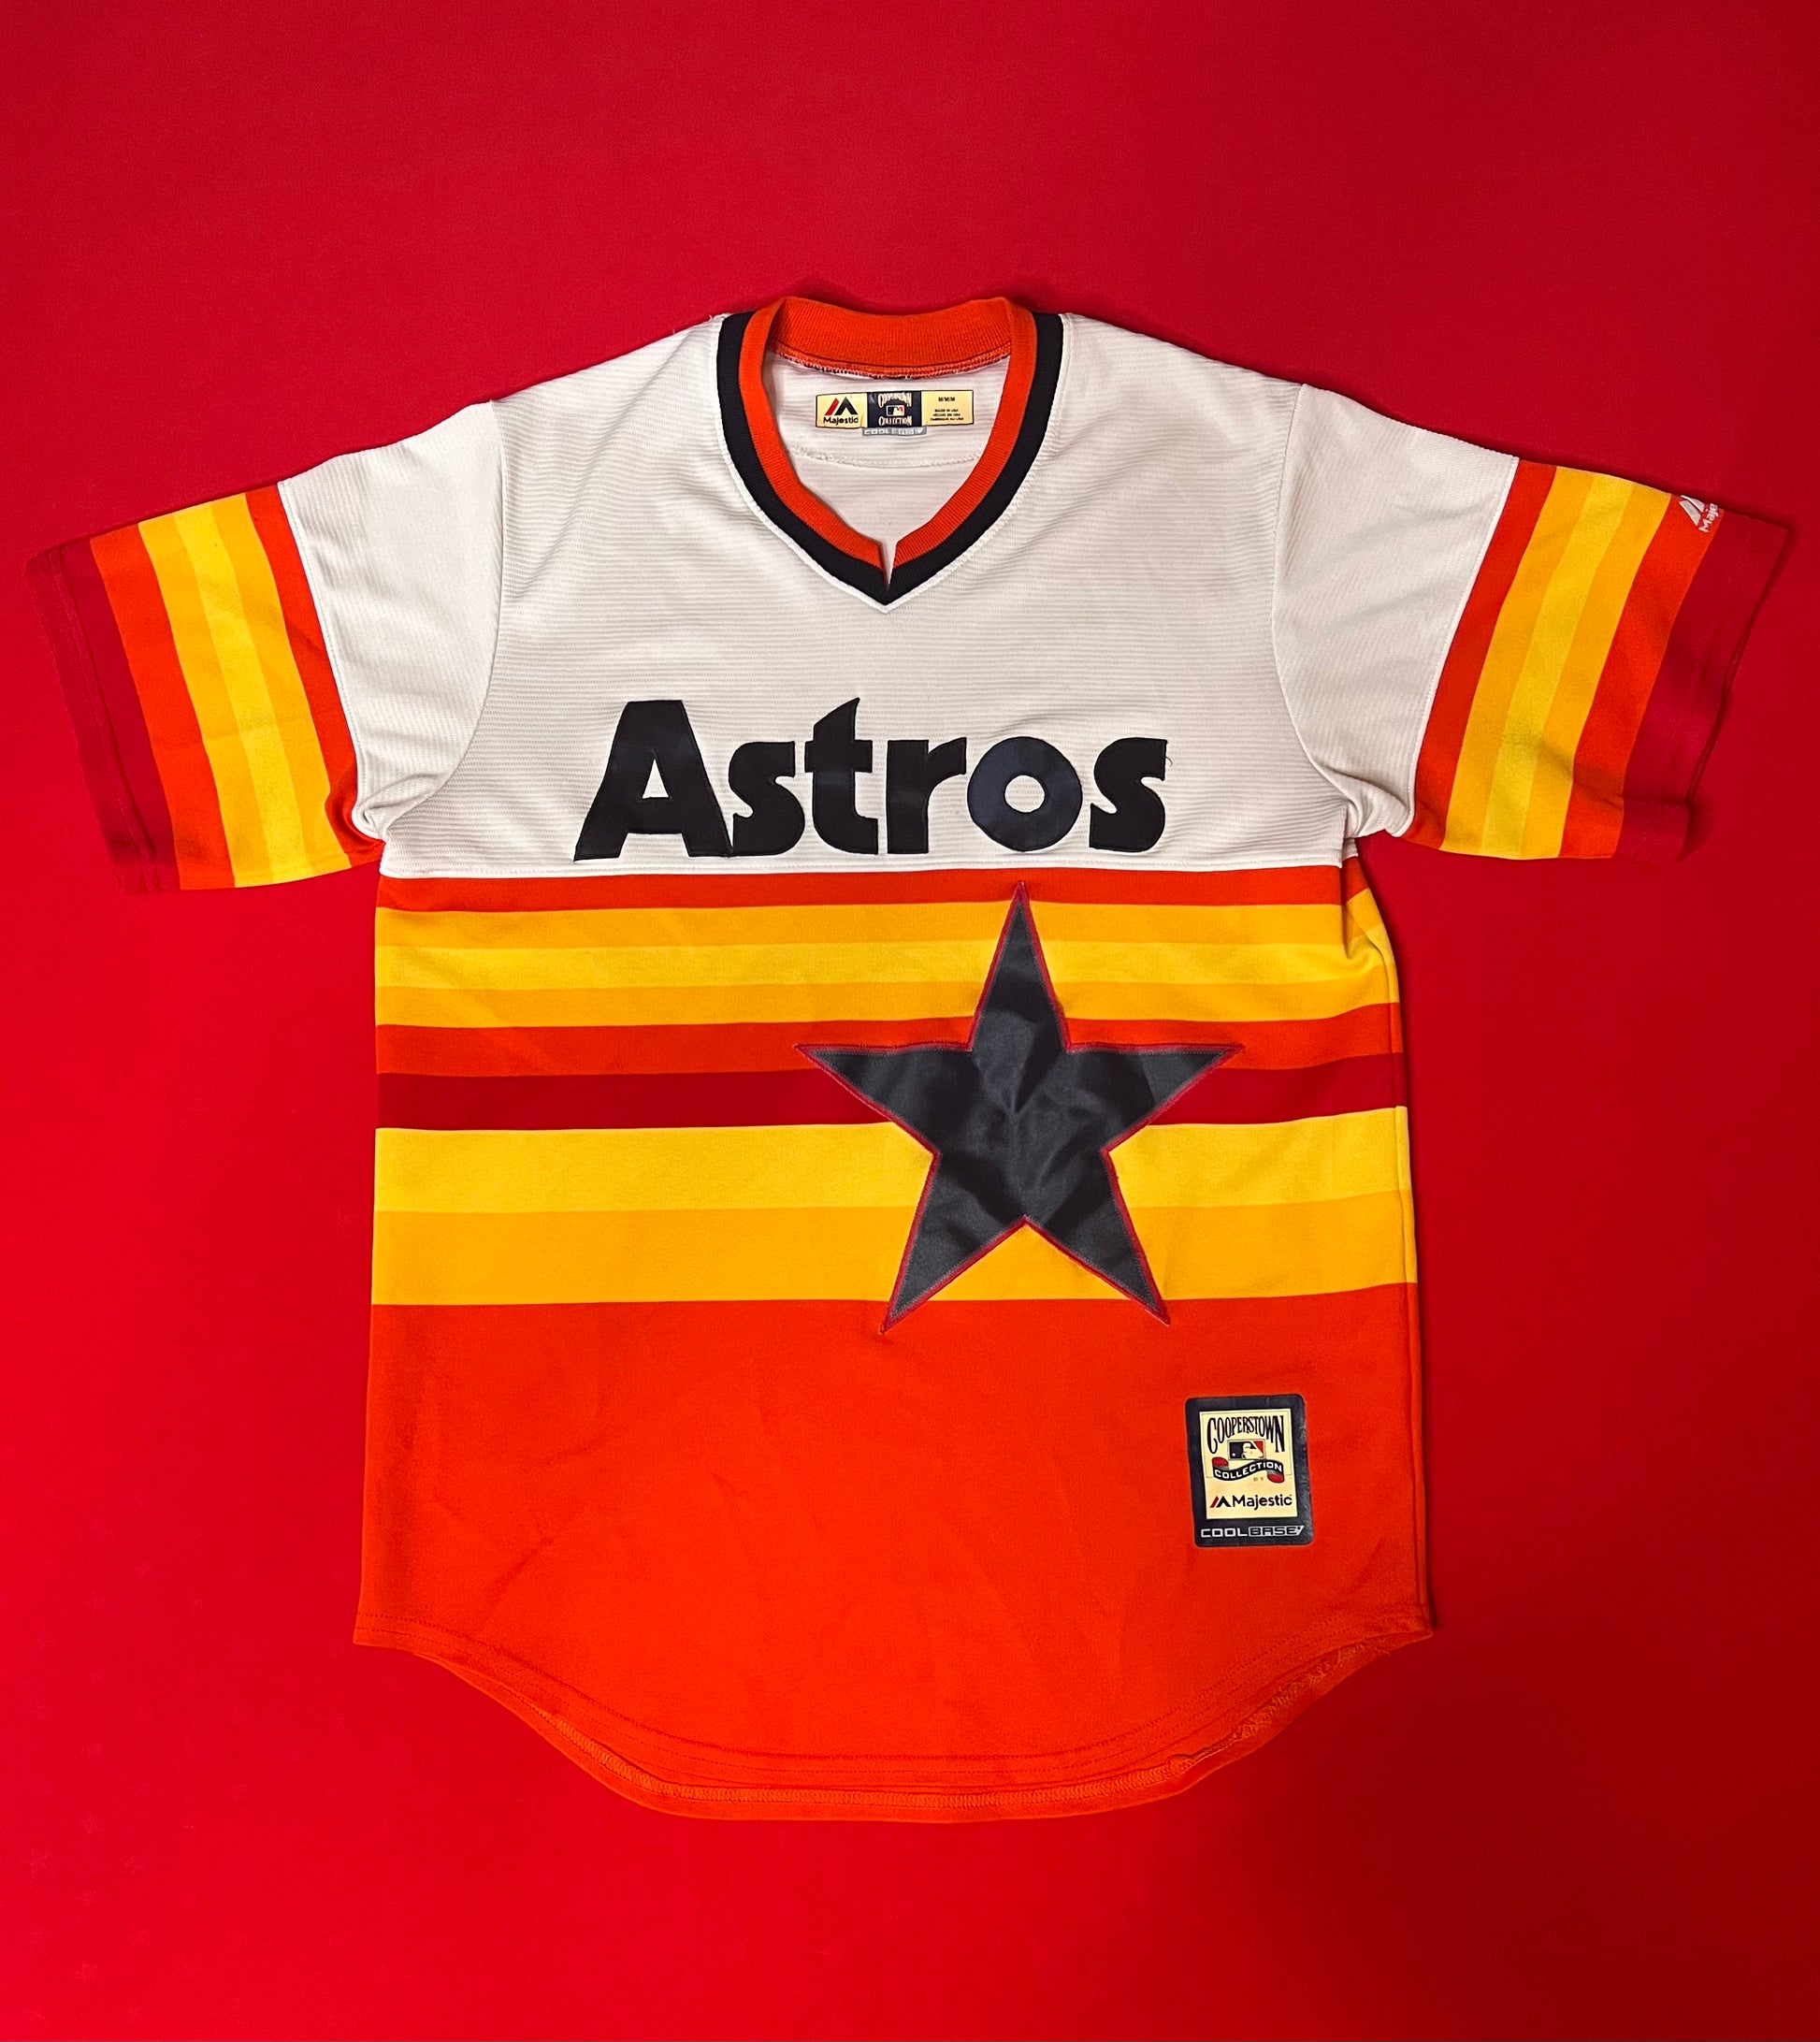 astros vintage jerseys